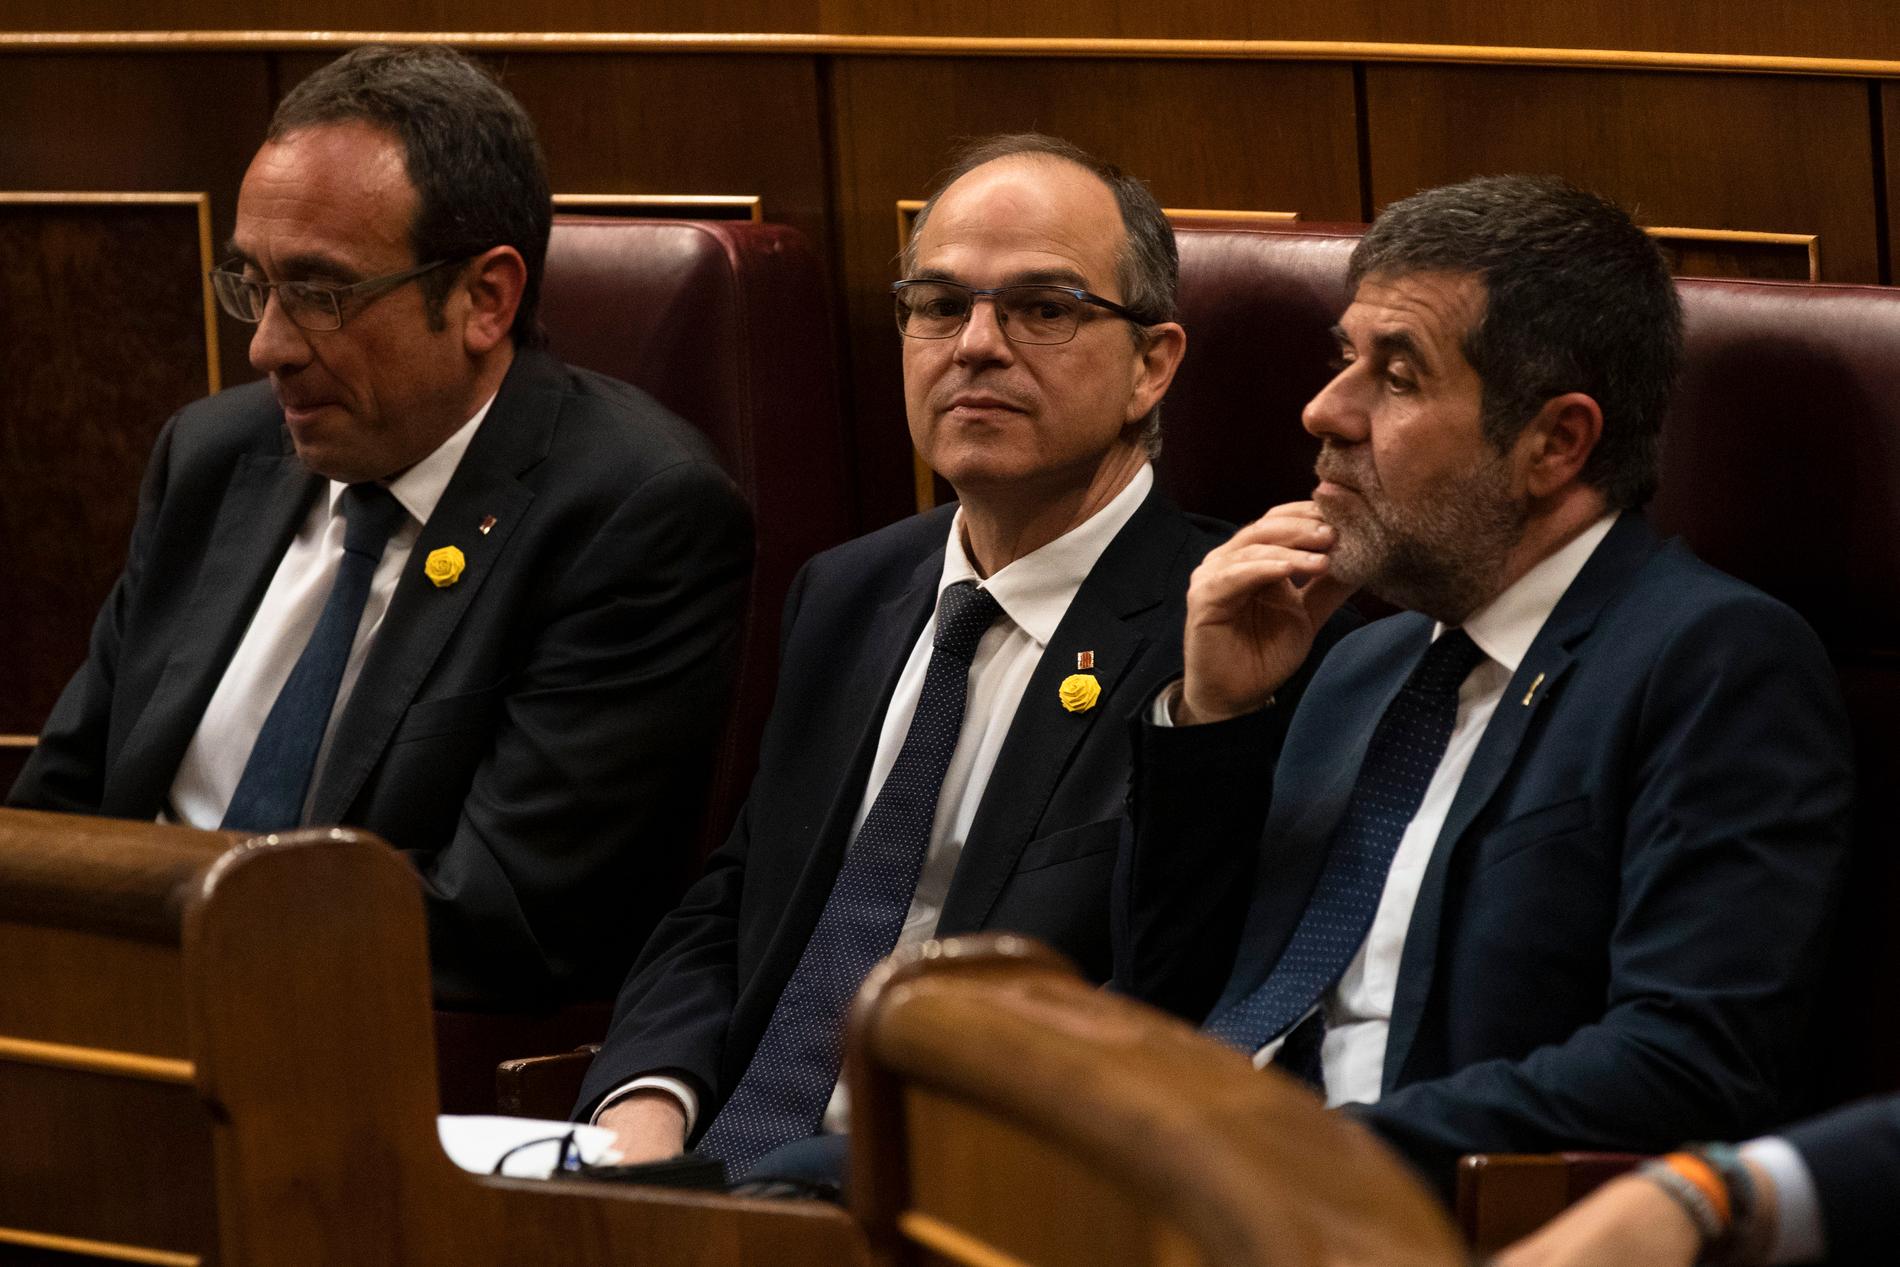 Josep Rull, Jordi Turull och Jordi Sànchez, som står åtalade för bland annat uppror i samband med självständighetsomröstningen i Katalonien 2017, deltog i parlamentets öppnande den 21 maj – tack vare sin permission från fängelset.